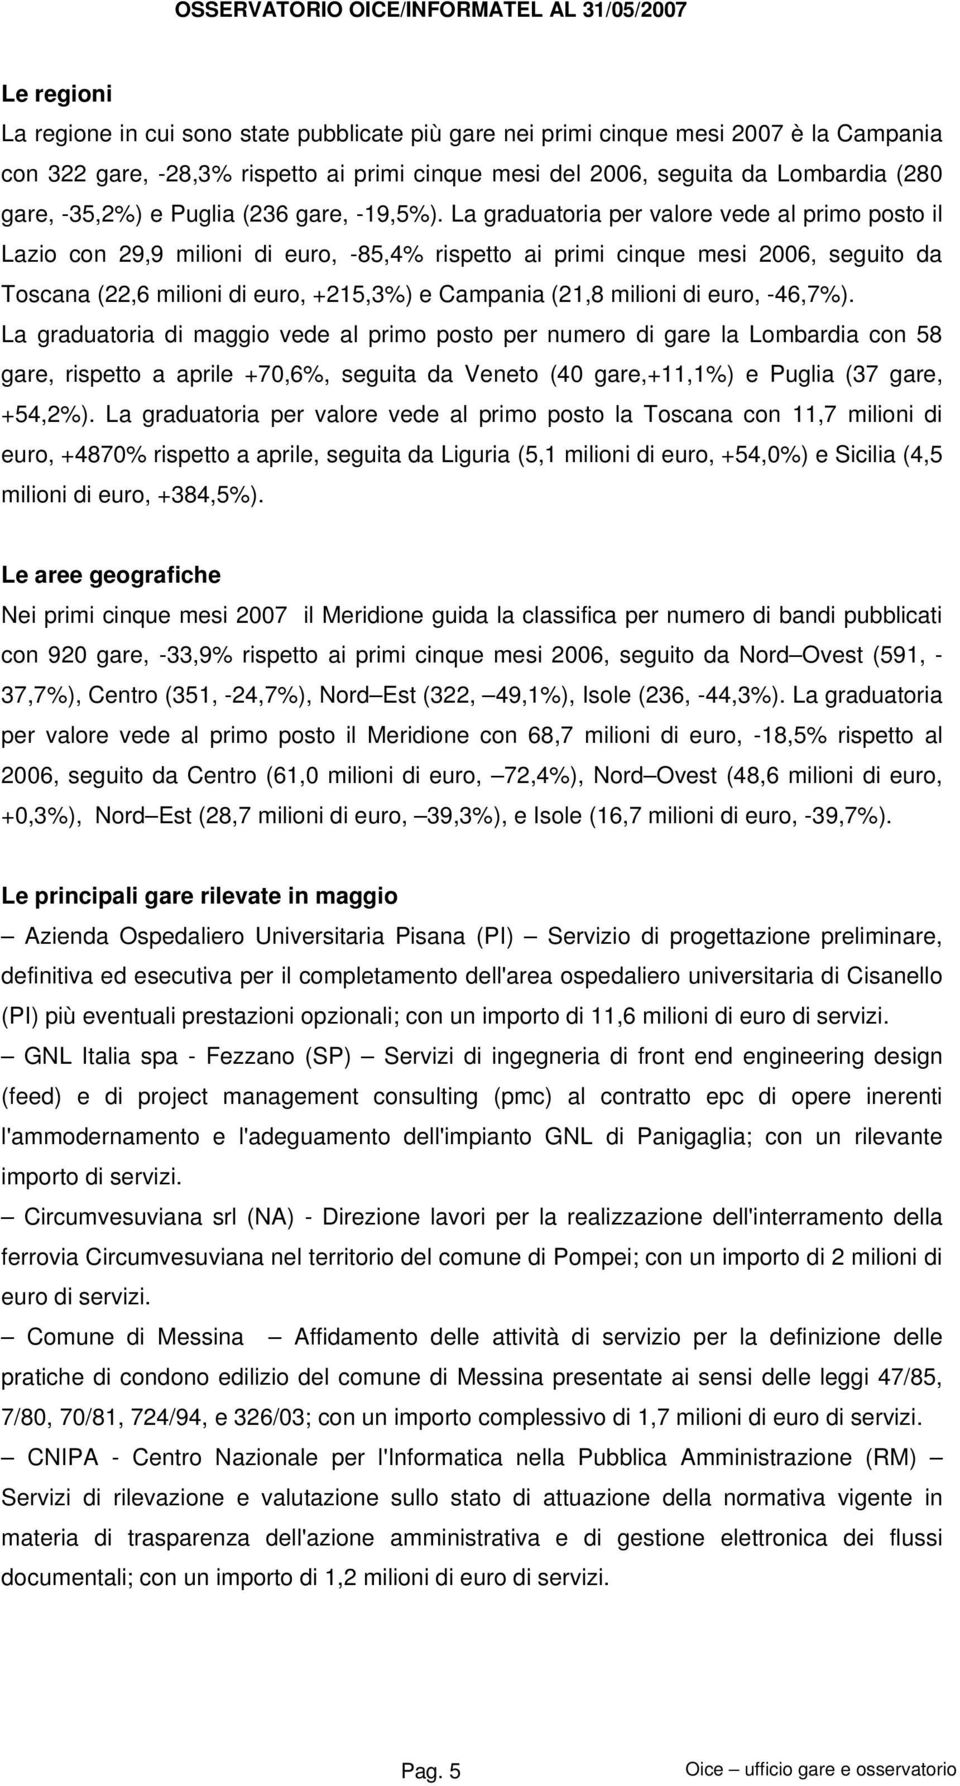 La graduatoria per valore vede al primo posto il Lazio con 29,9 milioni di euro, -85,4% rispetto ai primi cinque mesi 2006, seguito da Toscana (22,6 milioni di euro, +215,3%) e Campania (21,8 milioni